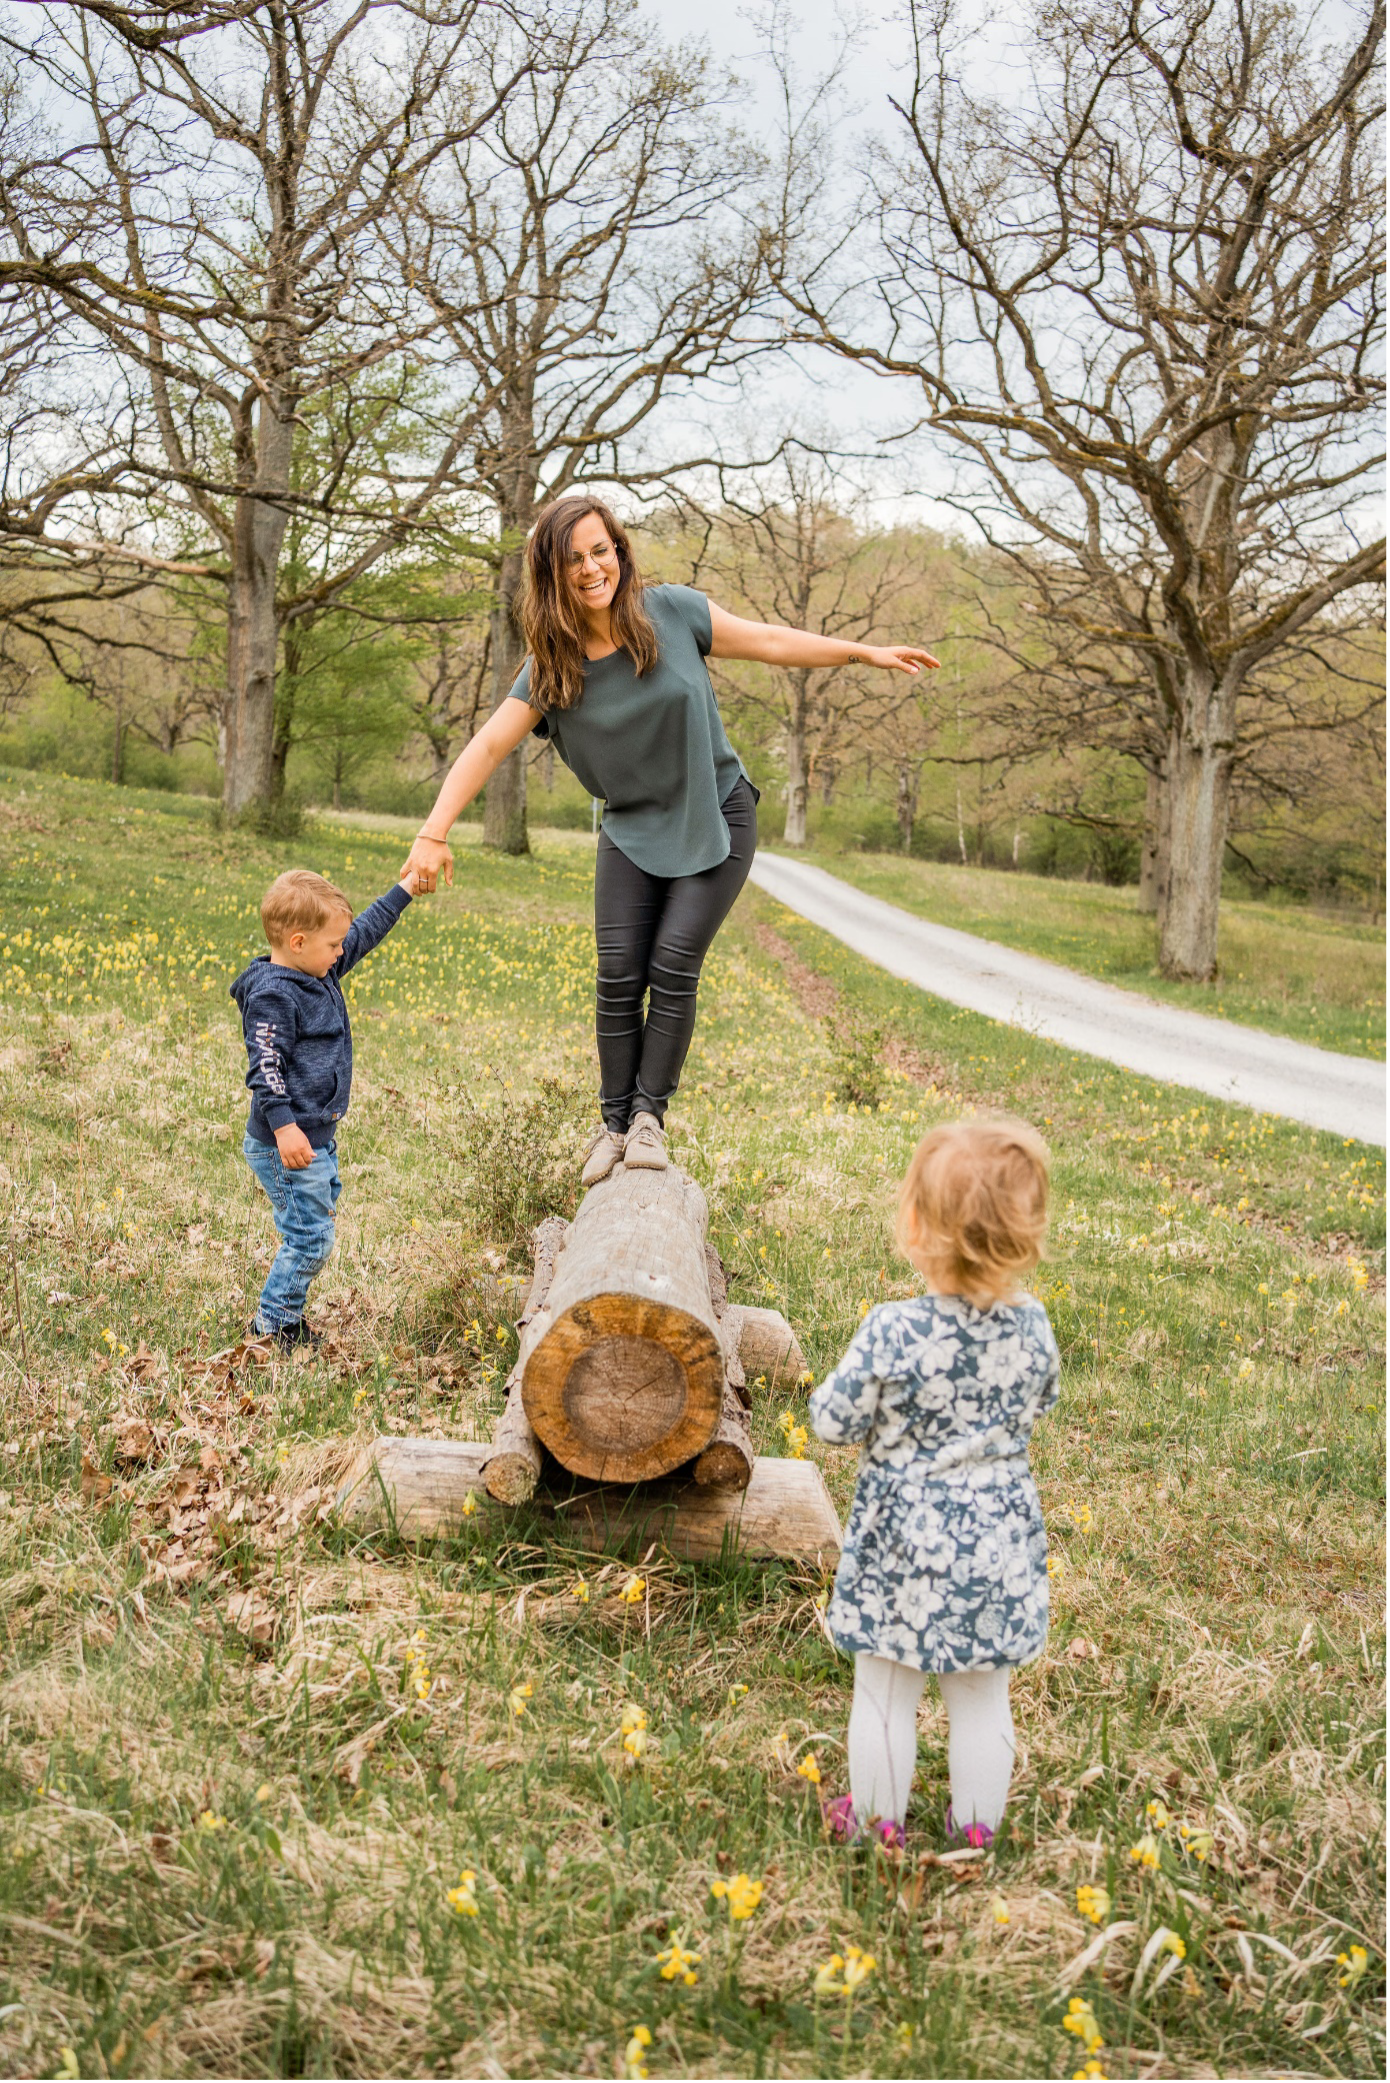 Ramona spielt mit Kindern und balanciert auf einem Holzbalken